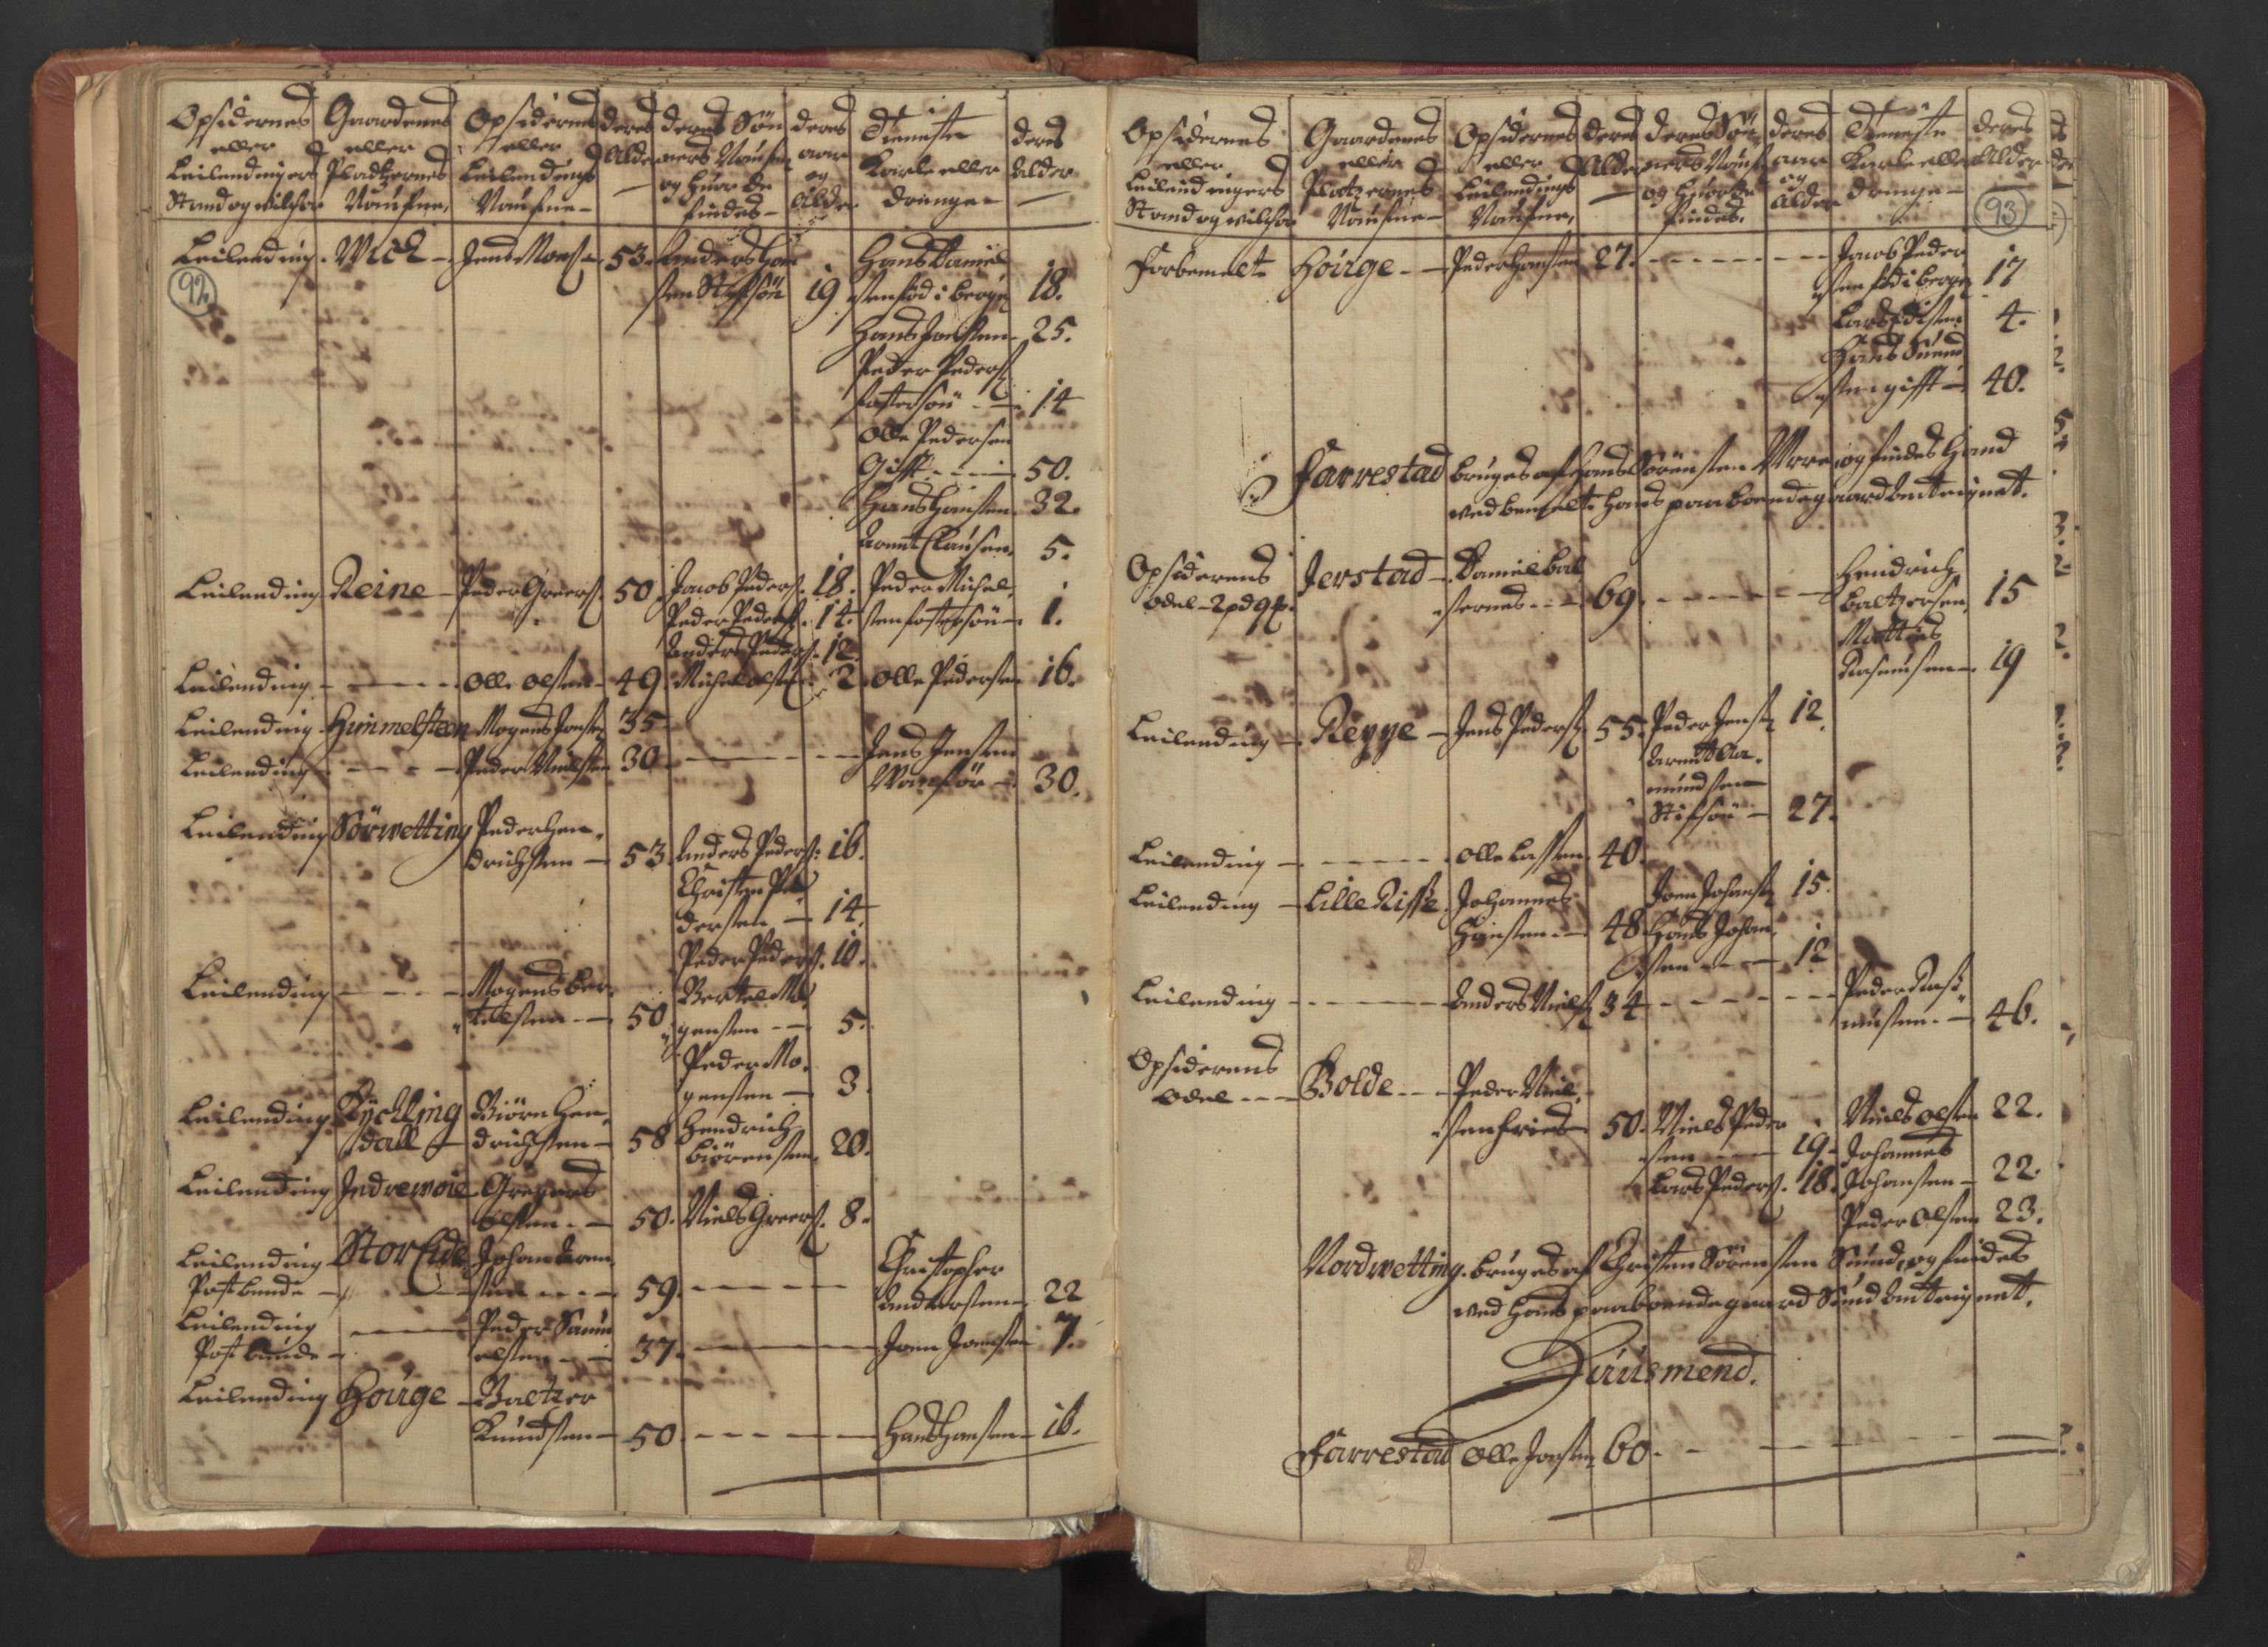 RA, Census (manntall) 1701, no. 18: Vesterålen, Andenes and Lofoten fogderi, 1701, p. 92-93